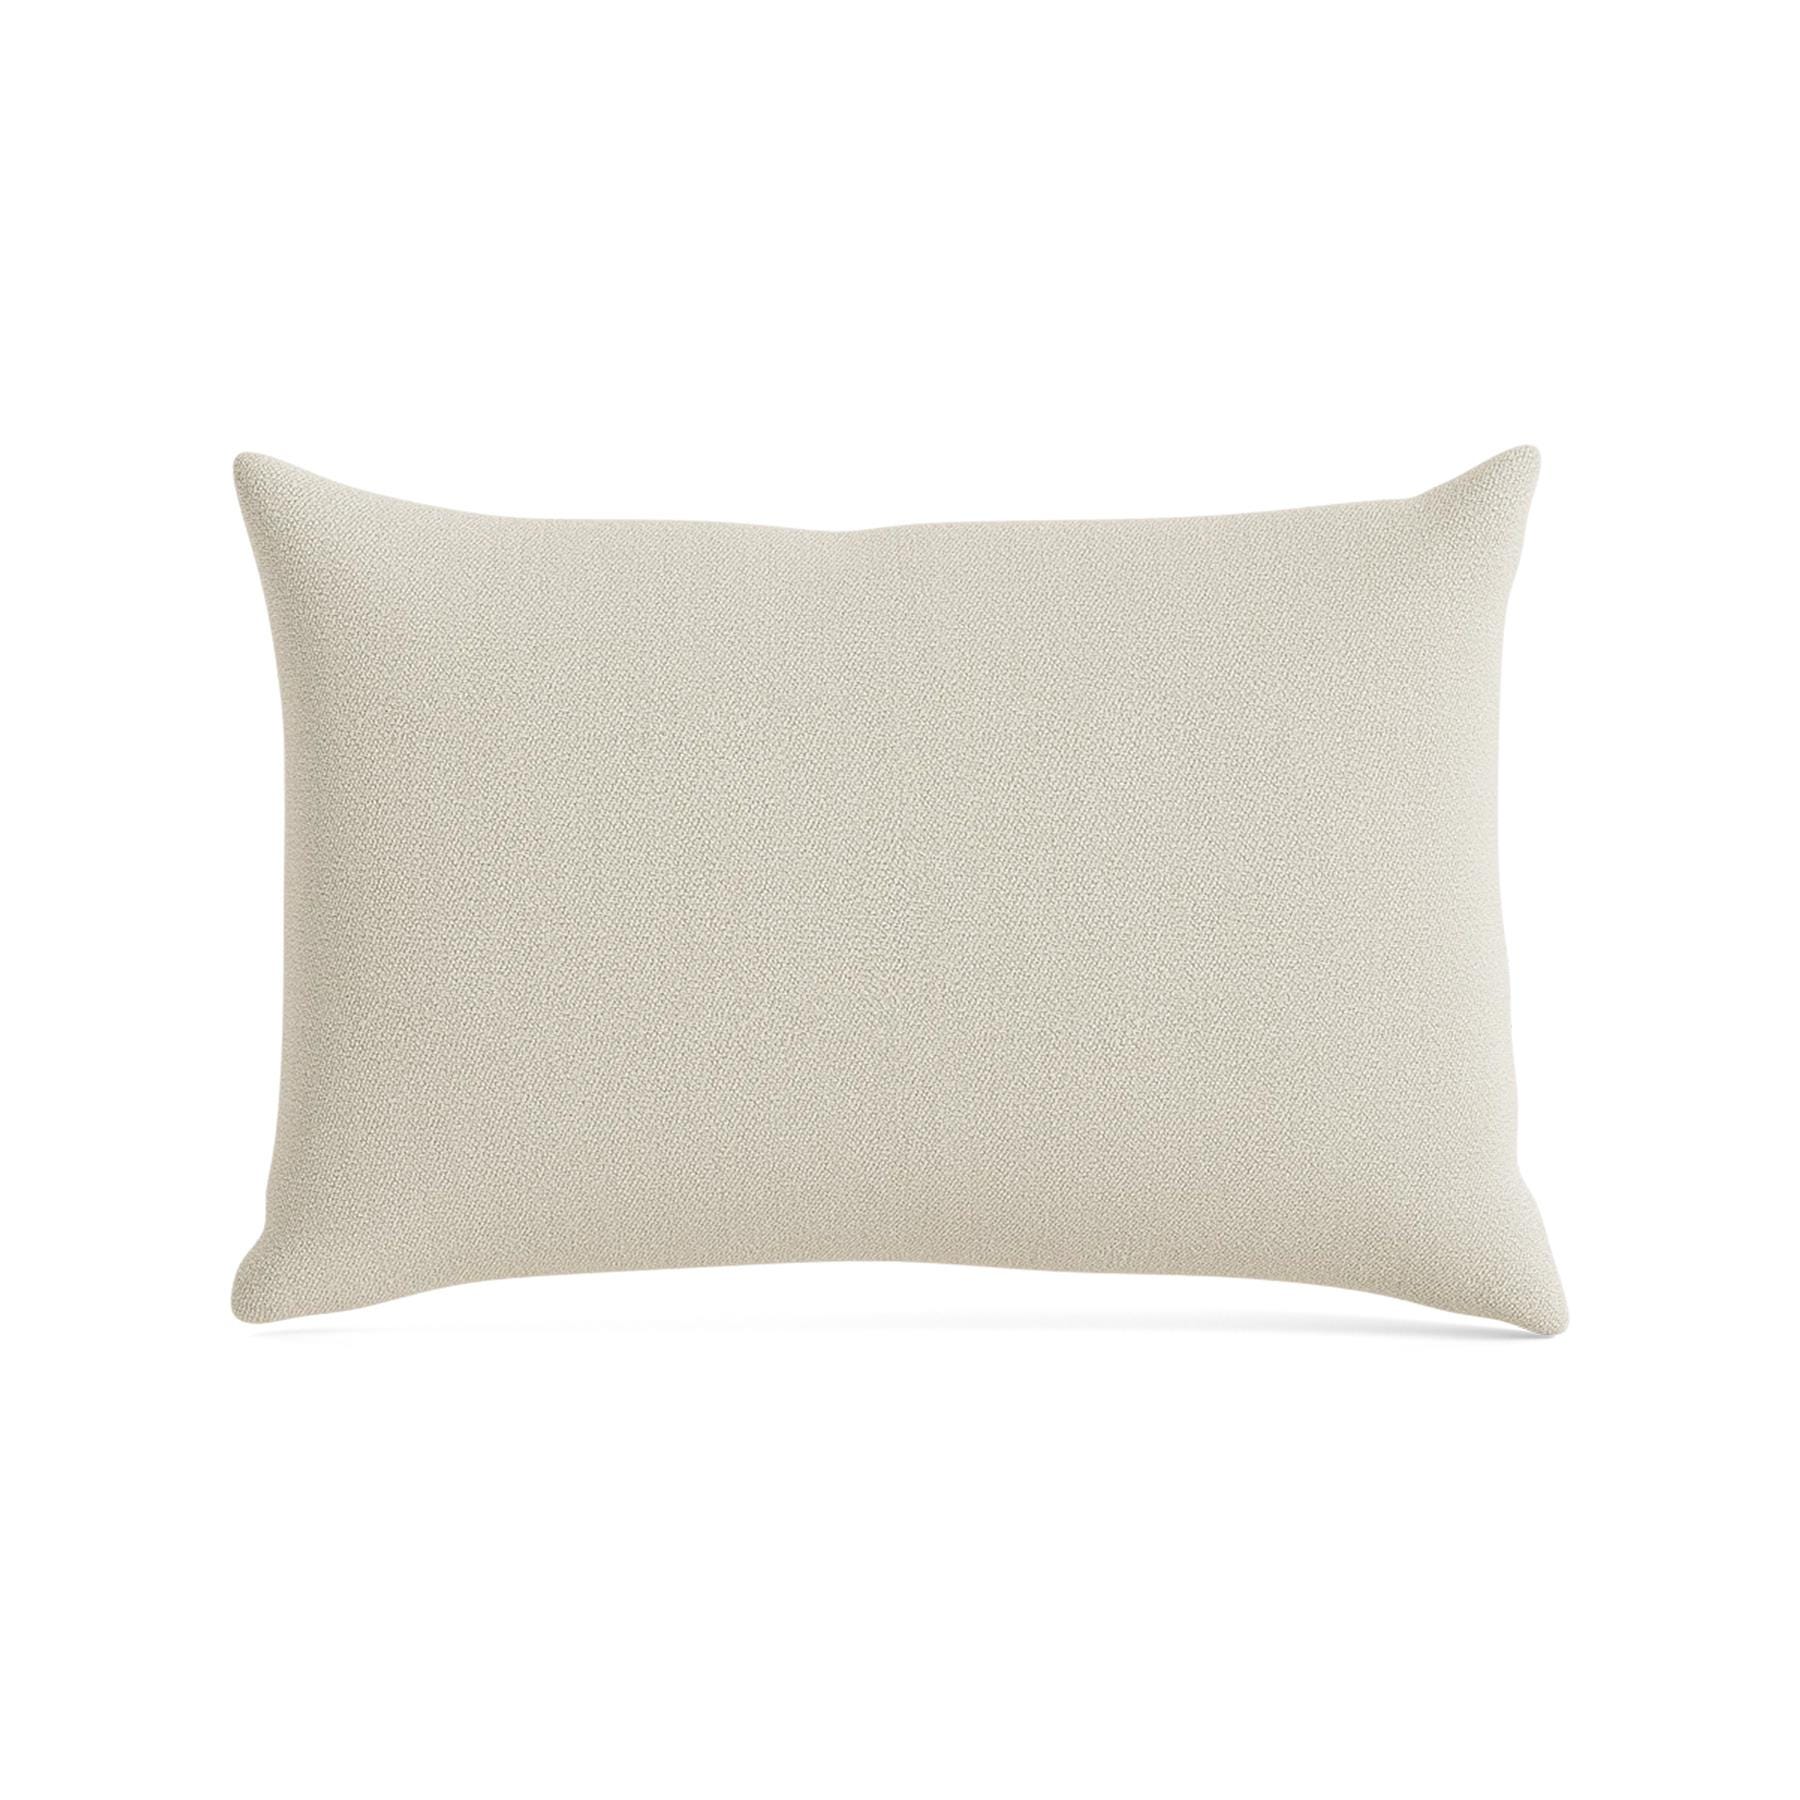 Make Nordic Pillow 40cmx60cm Vidar 146 Down And Fibers Cream